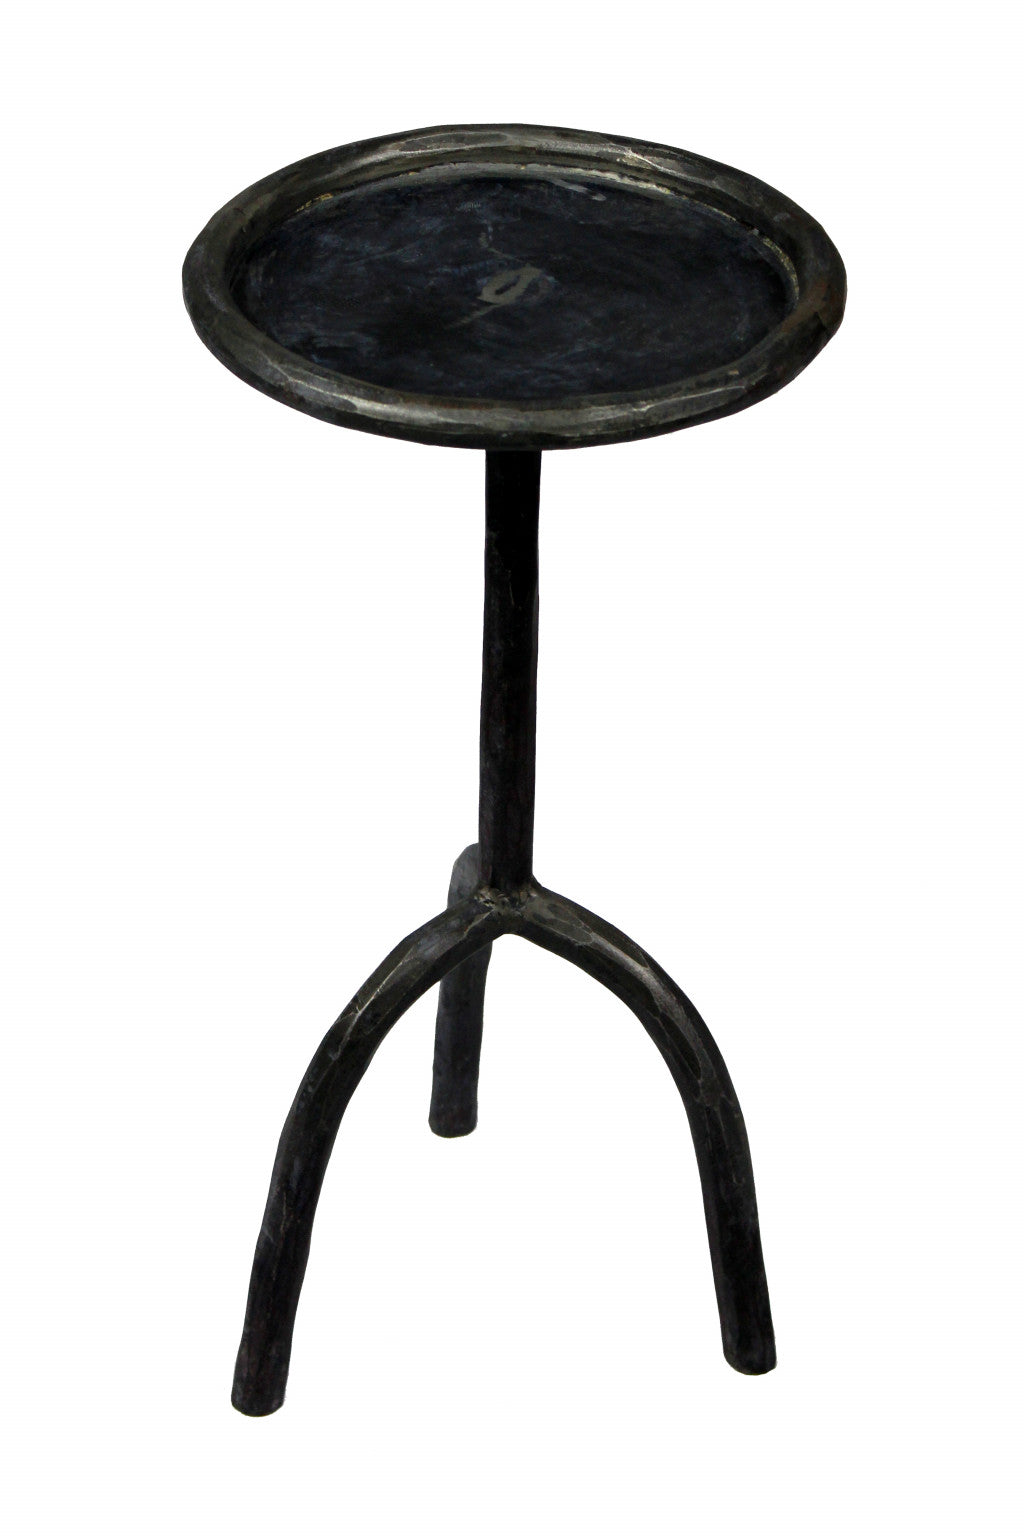 23" Black Iron Pedestal Round End Table